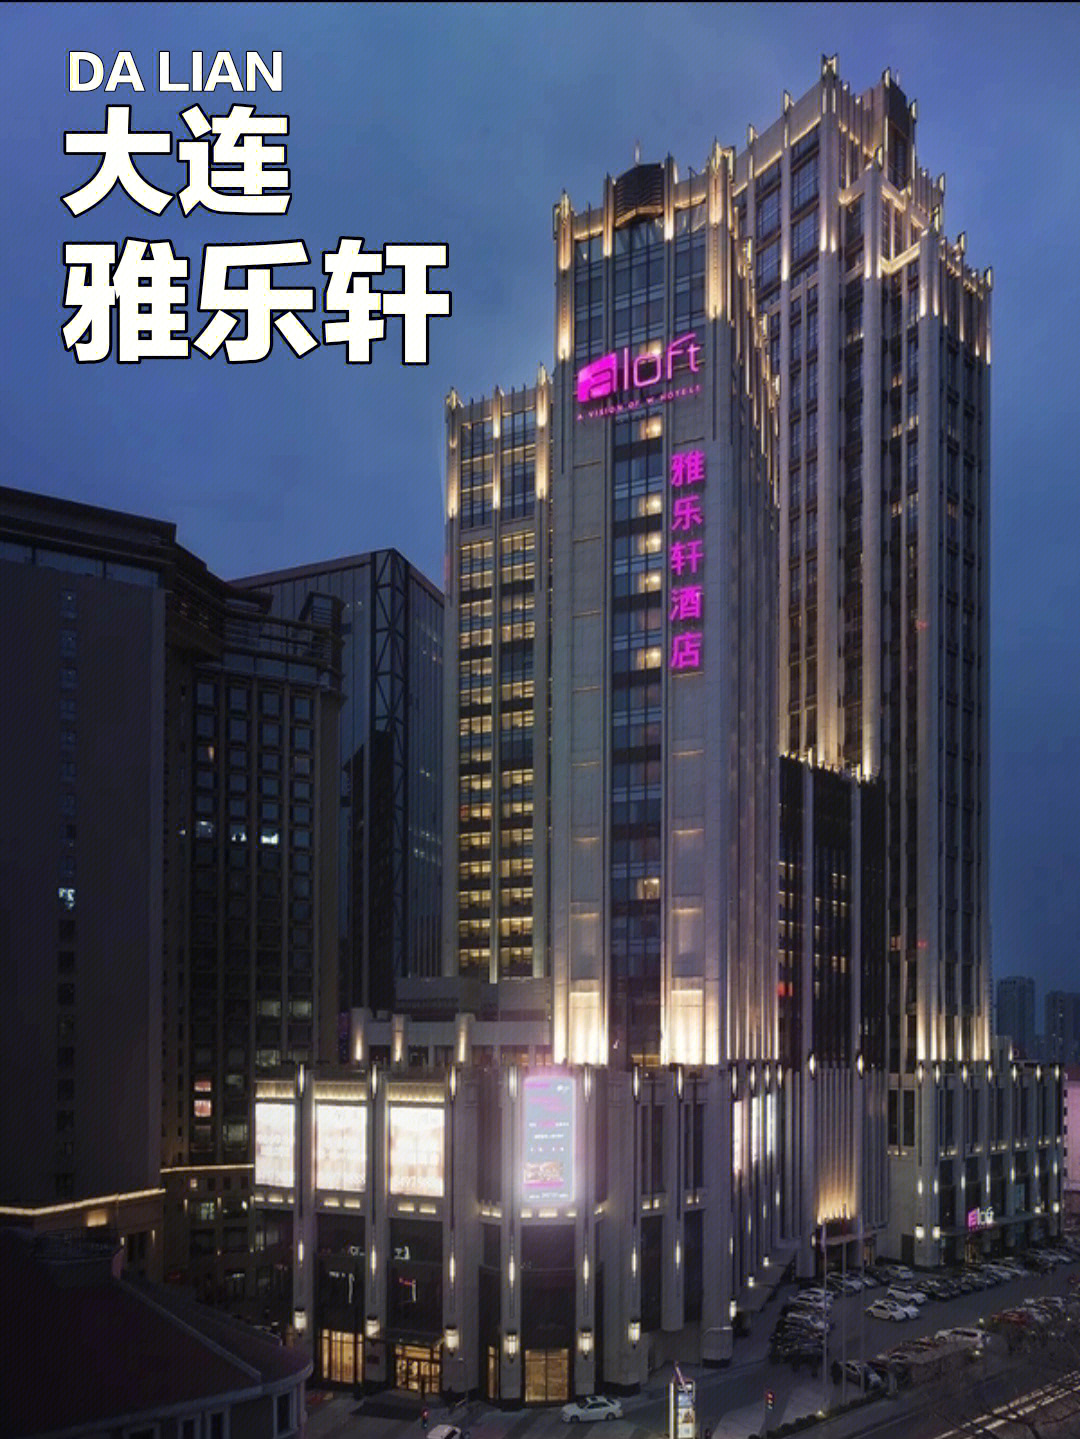 雅乐轩酒店logo图片